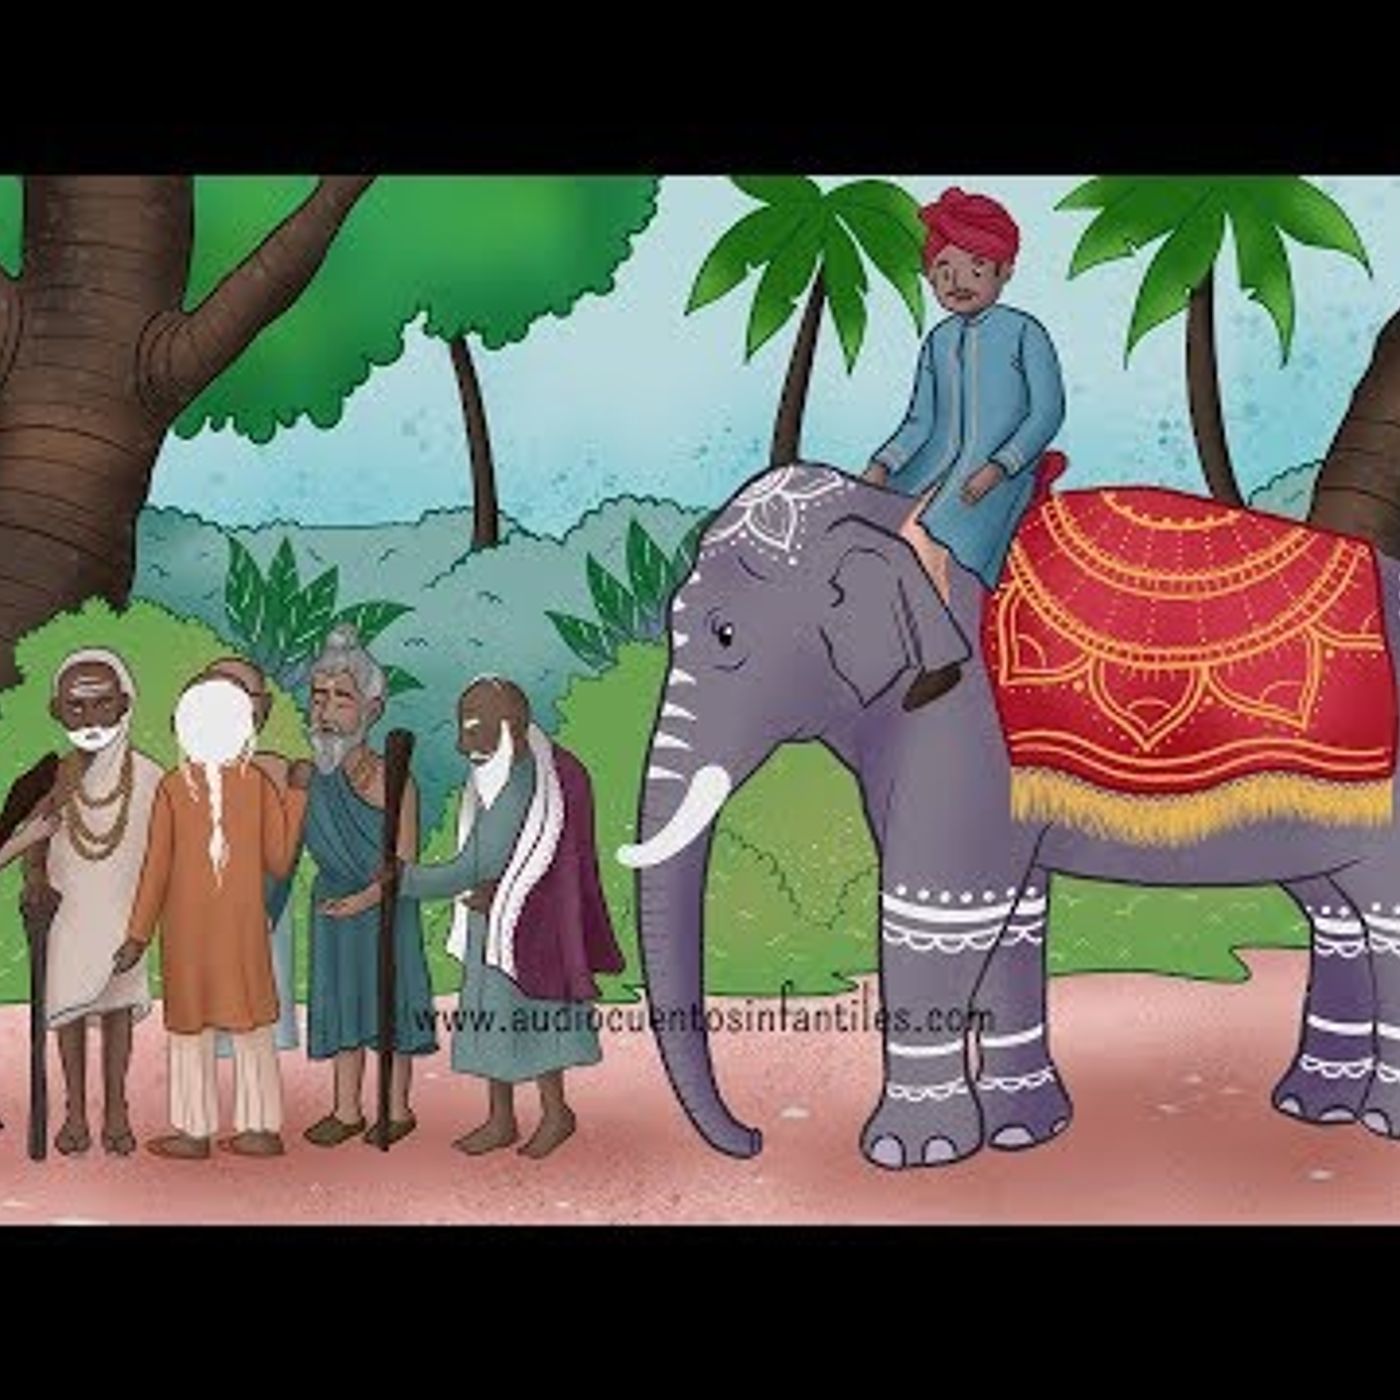 017. Seis sabios ciegos y un elefante  Cuento con valores y sabiduría